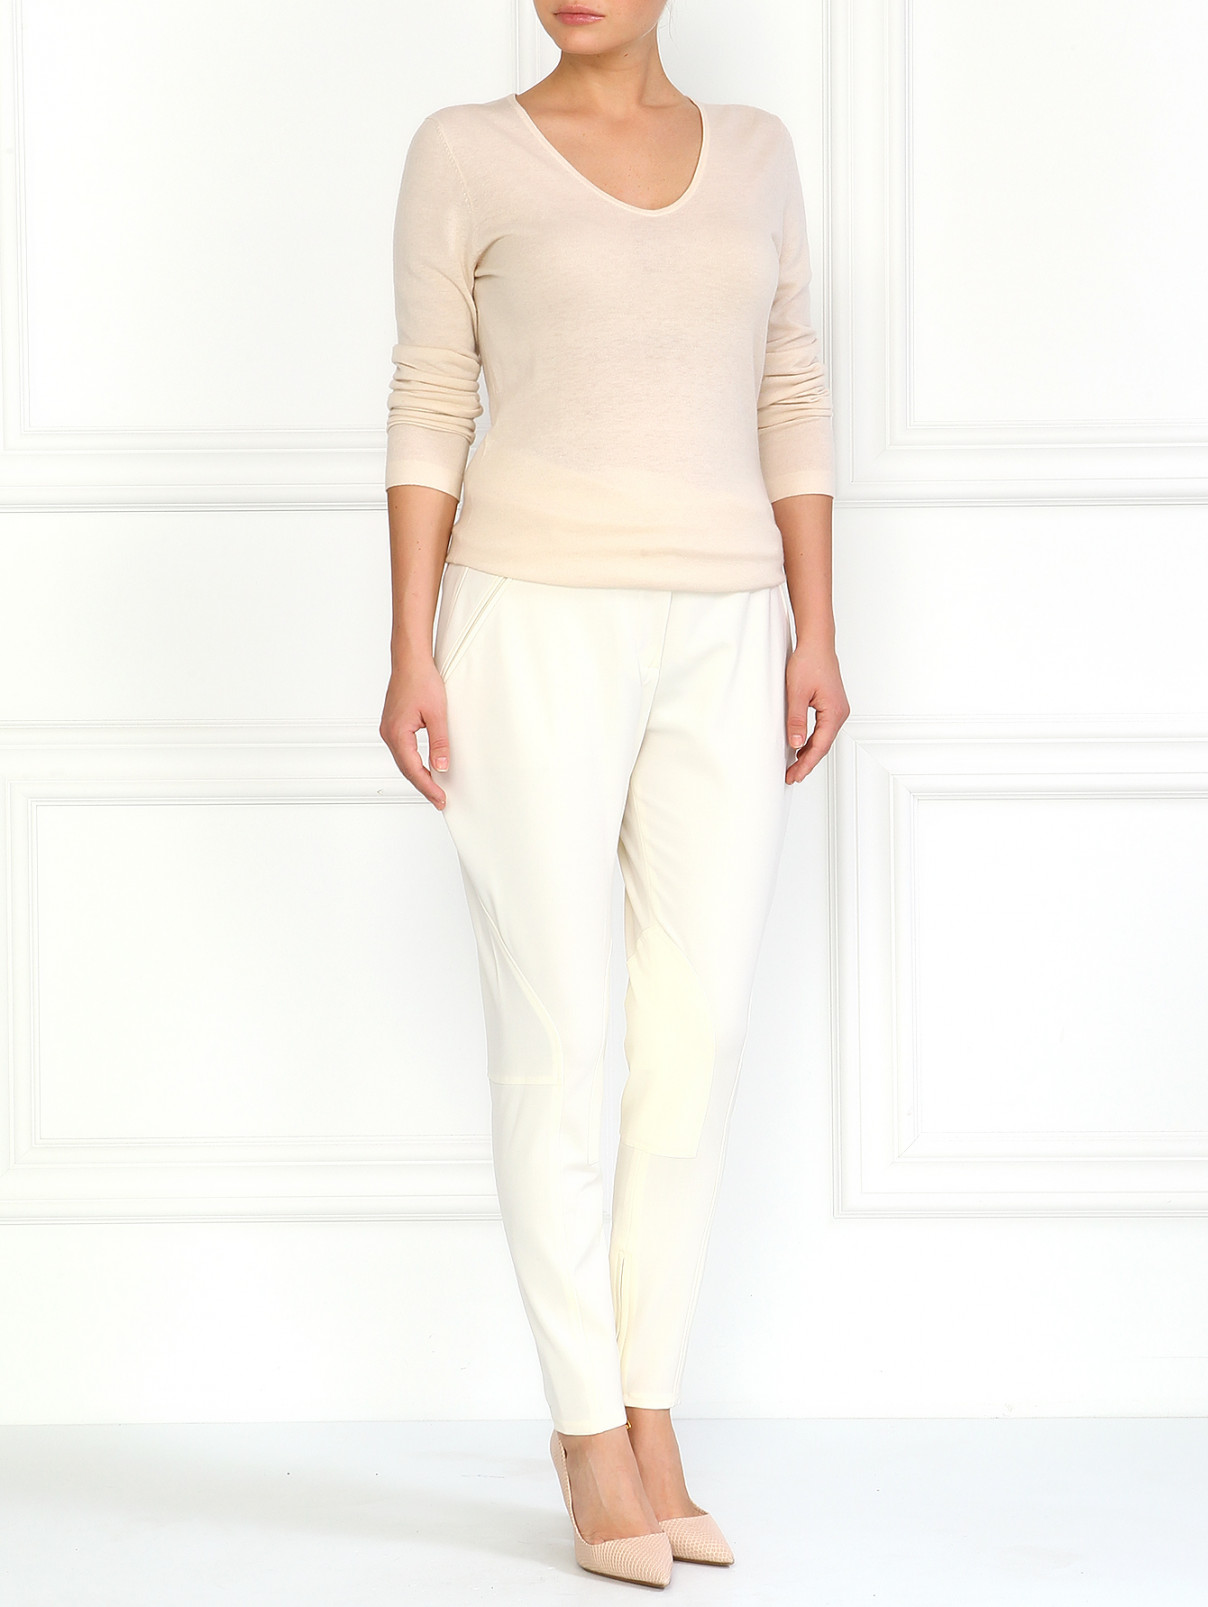 Шерстяные брюки-галифе Moschino  –  Модель Общий вид  – Цвет:  Белый